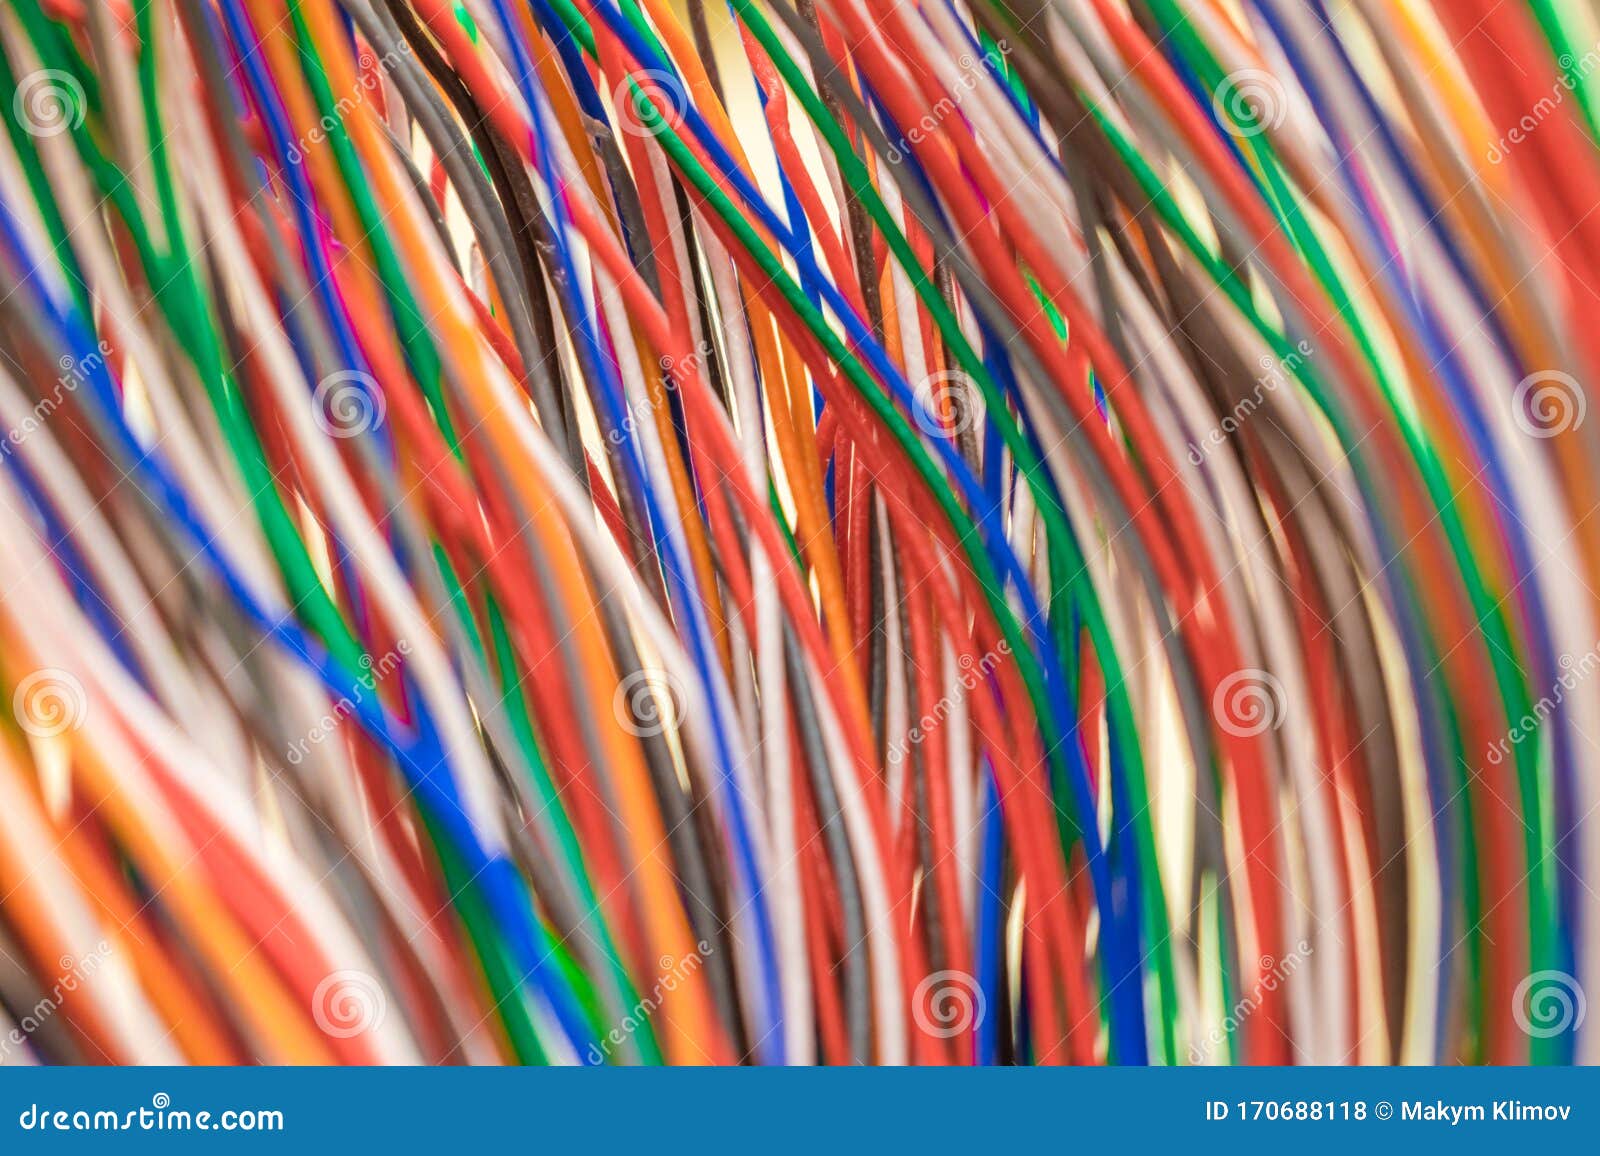 Wielokolorowe Pionowe Przewody Elektryczne Przewody Telekomunikacyjne Są Ze  Sobą Połączone Cienki Kolorowy Kabel Telefoniczny Zdjęcie Stock - Obraz  złożonej z internety, elektryczny: 170688118